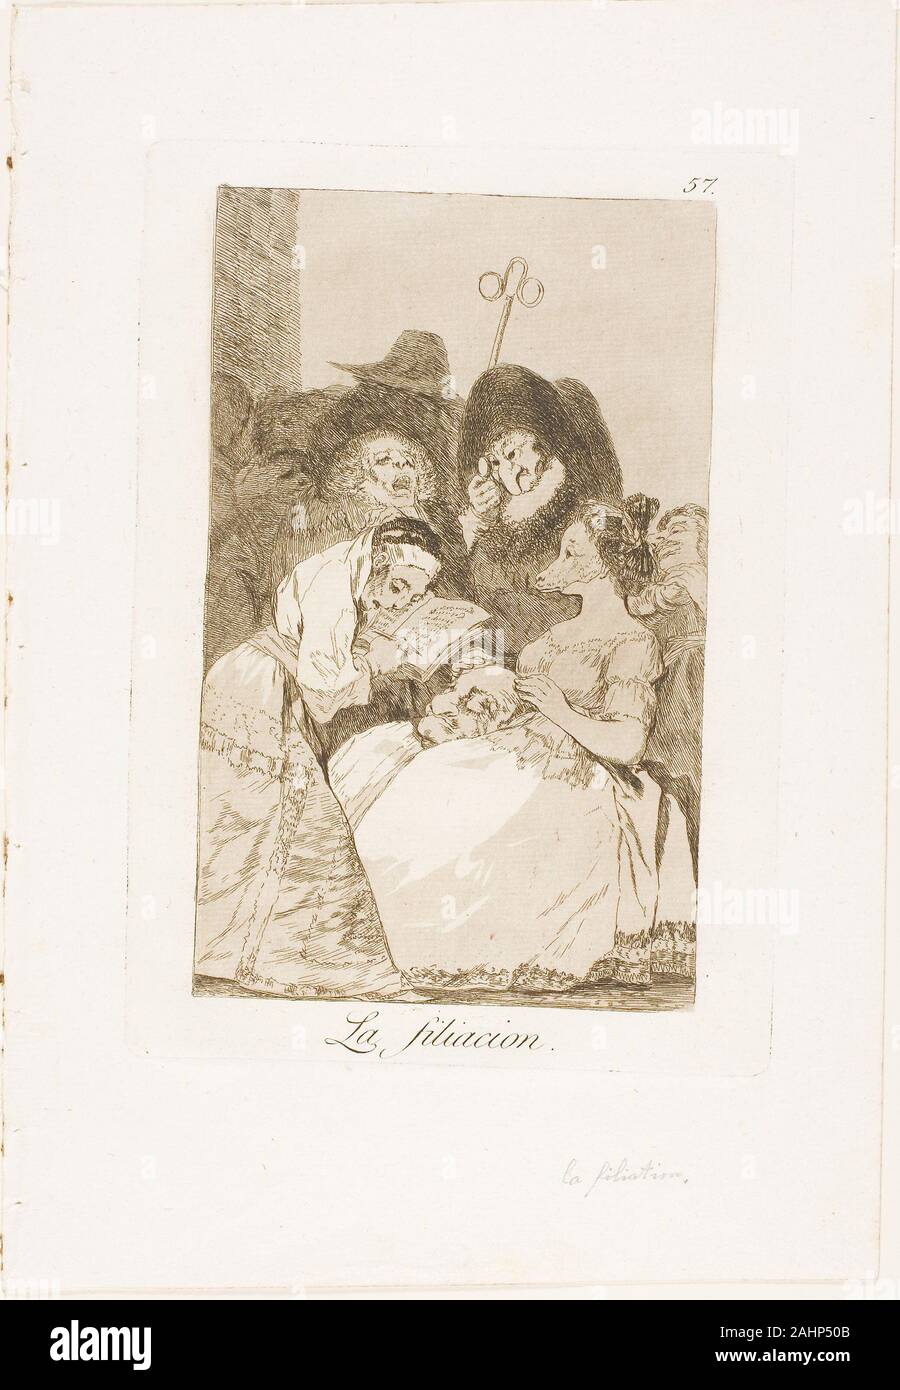 Francisco José de Goya y Lucientes. Die kindschaft, Platte 57 aus Los Caprichos. 1797 - 1799. Spanien. Radierung und Aquatinta auf Elfenbein Bütten Stockfoto